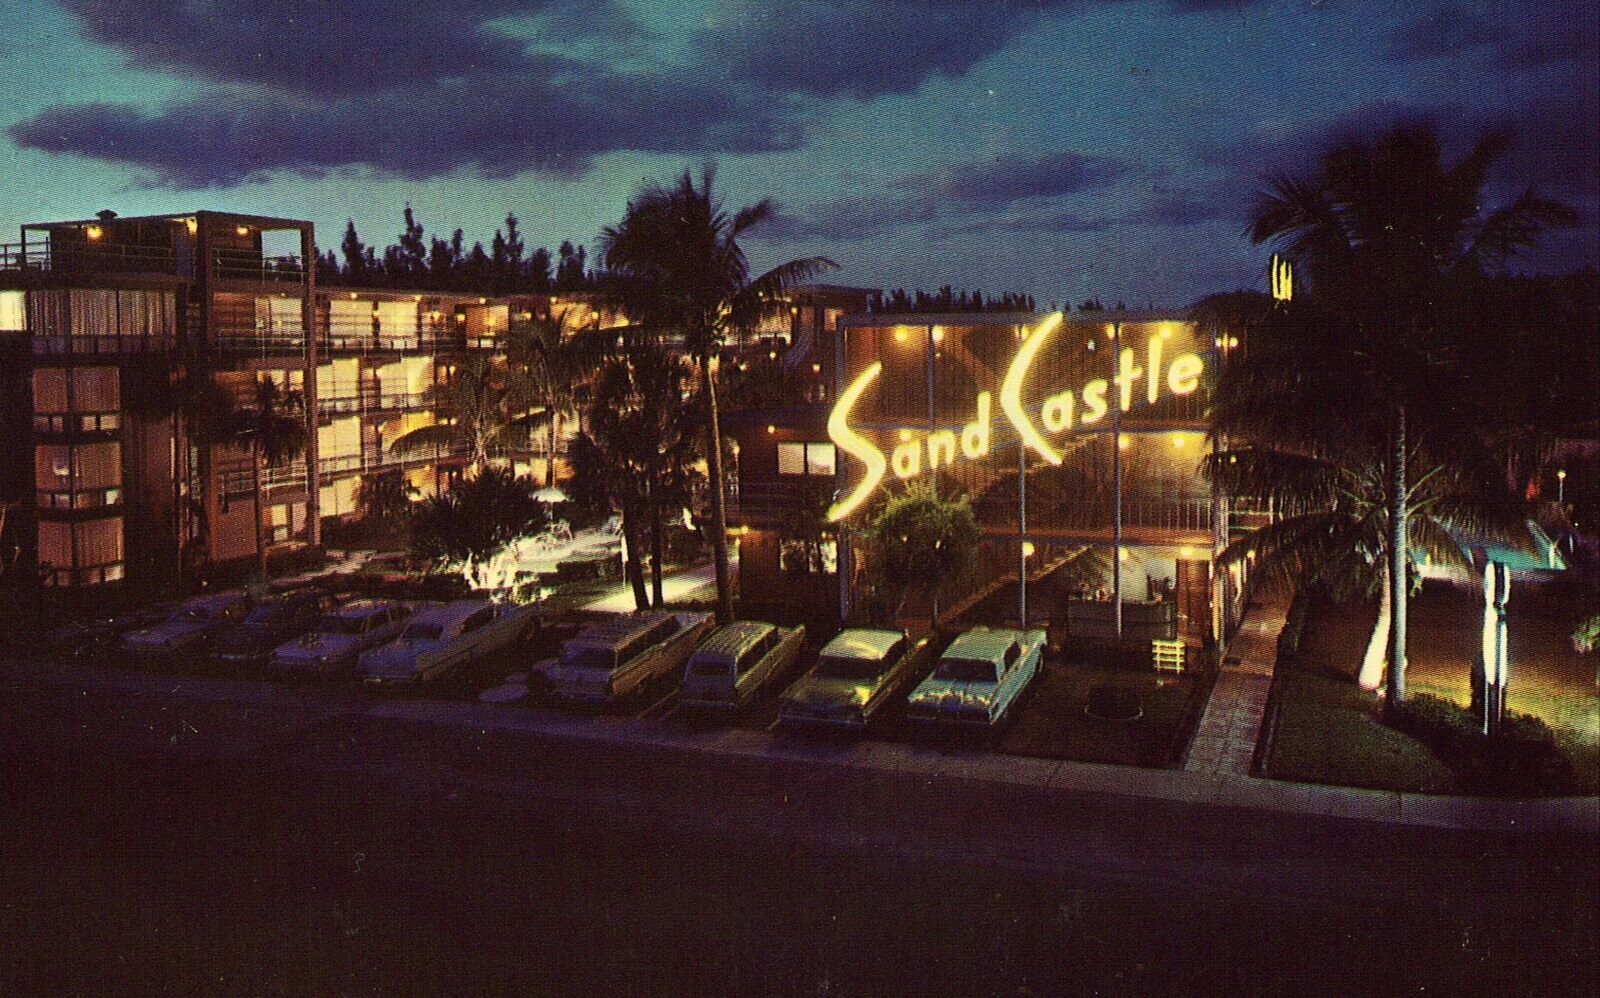 Sandcastle Resort Hotel - Fort Lauderdale, Florida Vintage Postcard